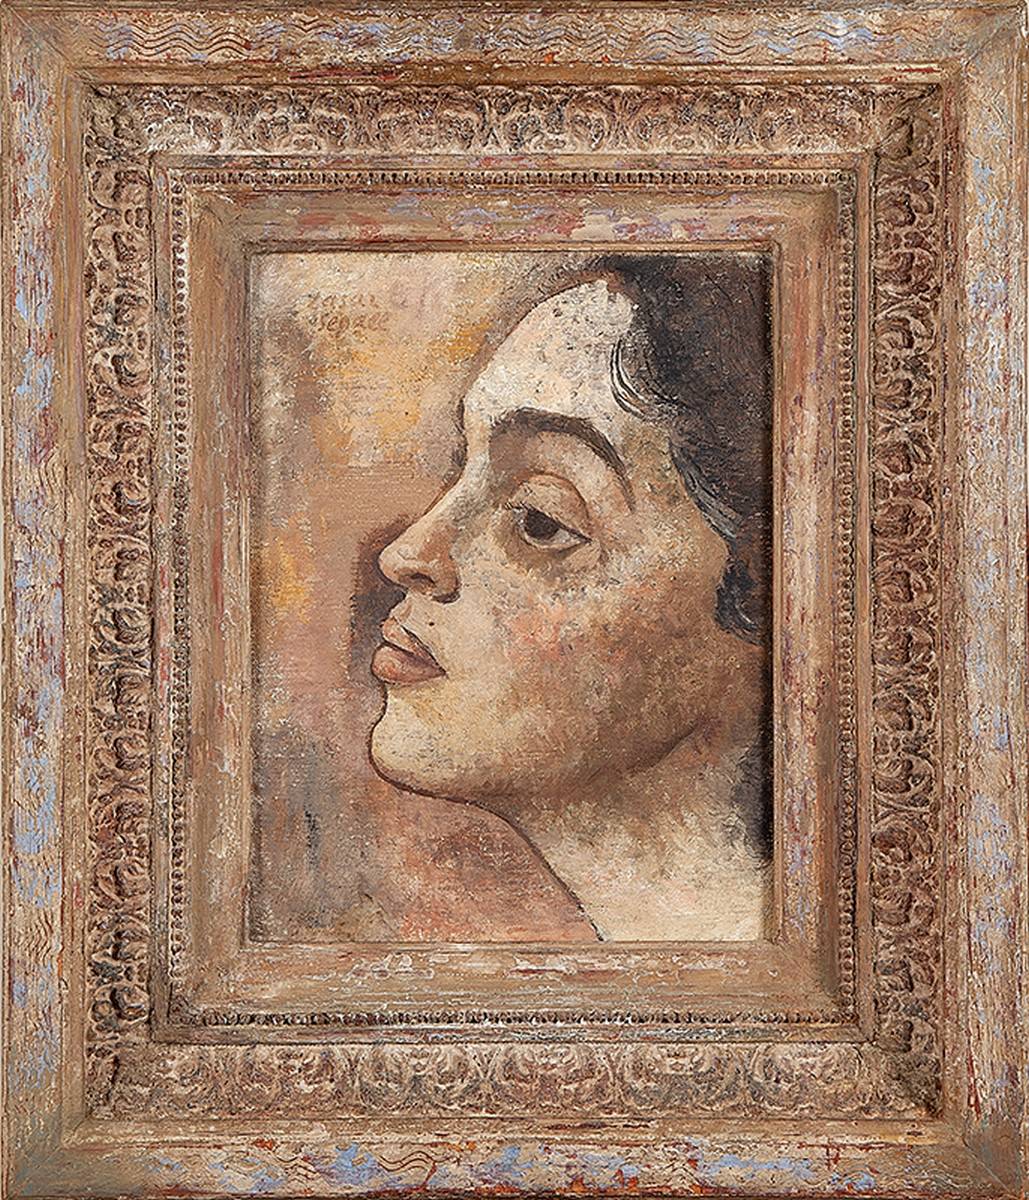 LASAR SEGALL, Porträt von Lucy. Ost, 33 x 40. Im cse signiert und datiert 1936.